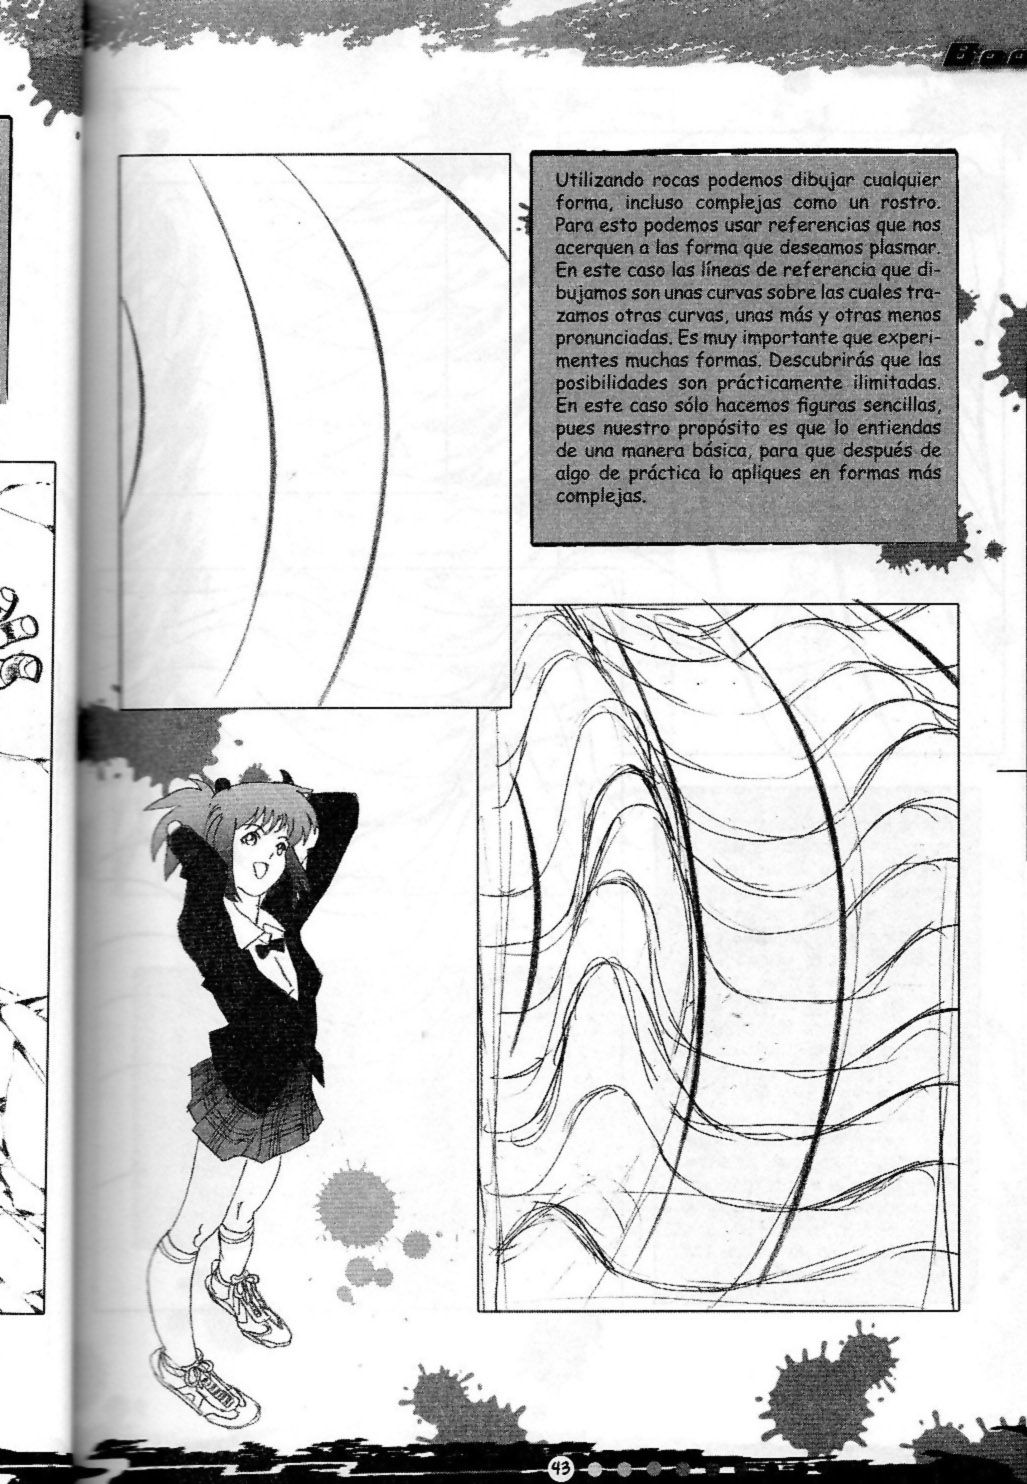 DibujArte Epecial Manga #15/20 - Especial fondos [Spanish] 42